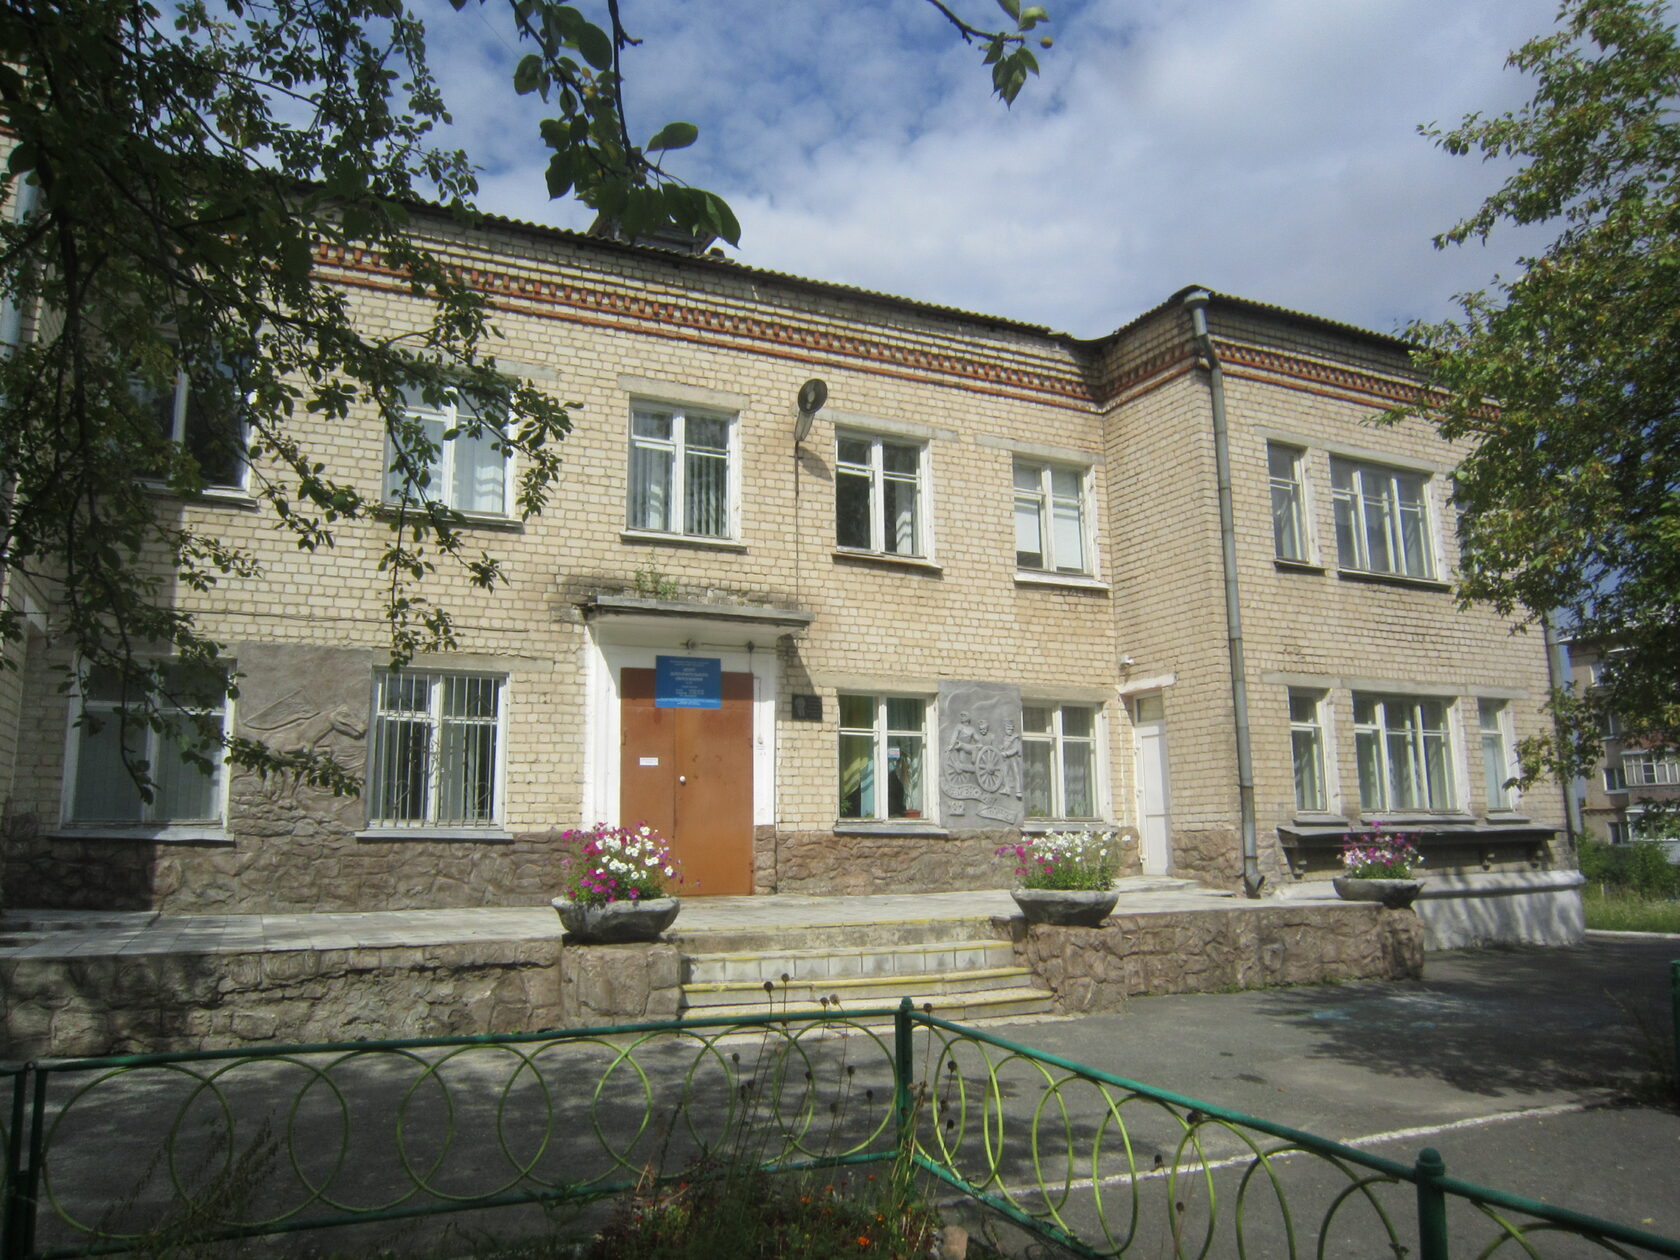 Геологический музей имени В.П. Шевалёва